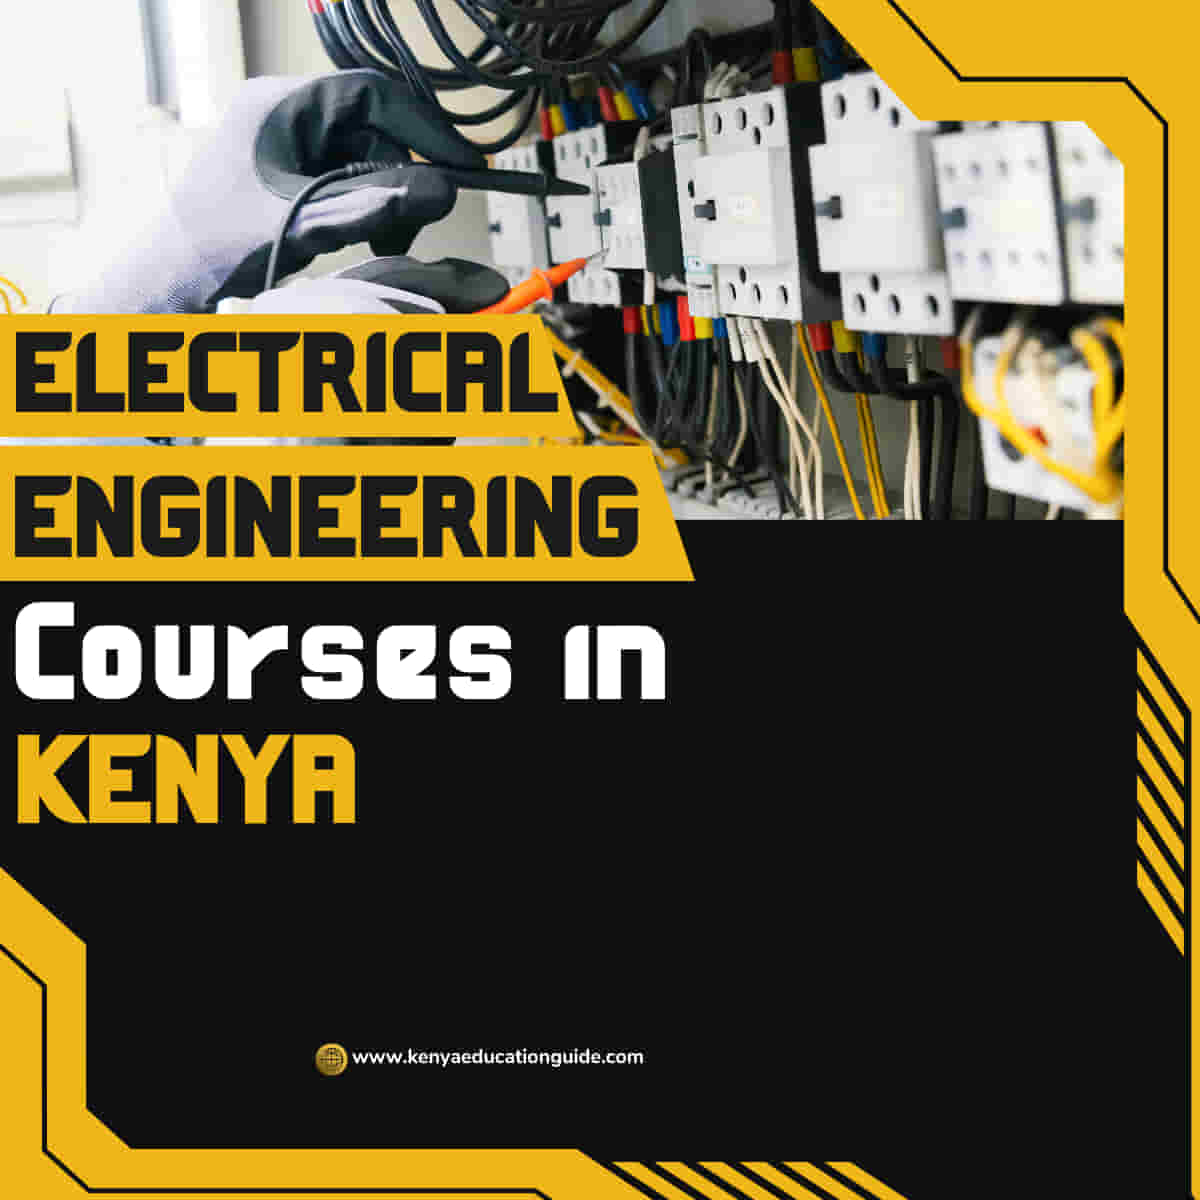 Electrical Engineering Courses in Kenya